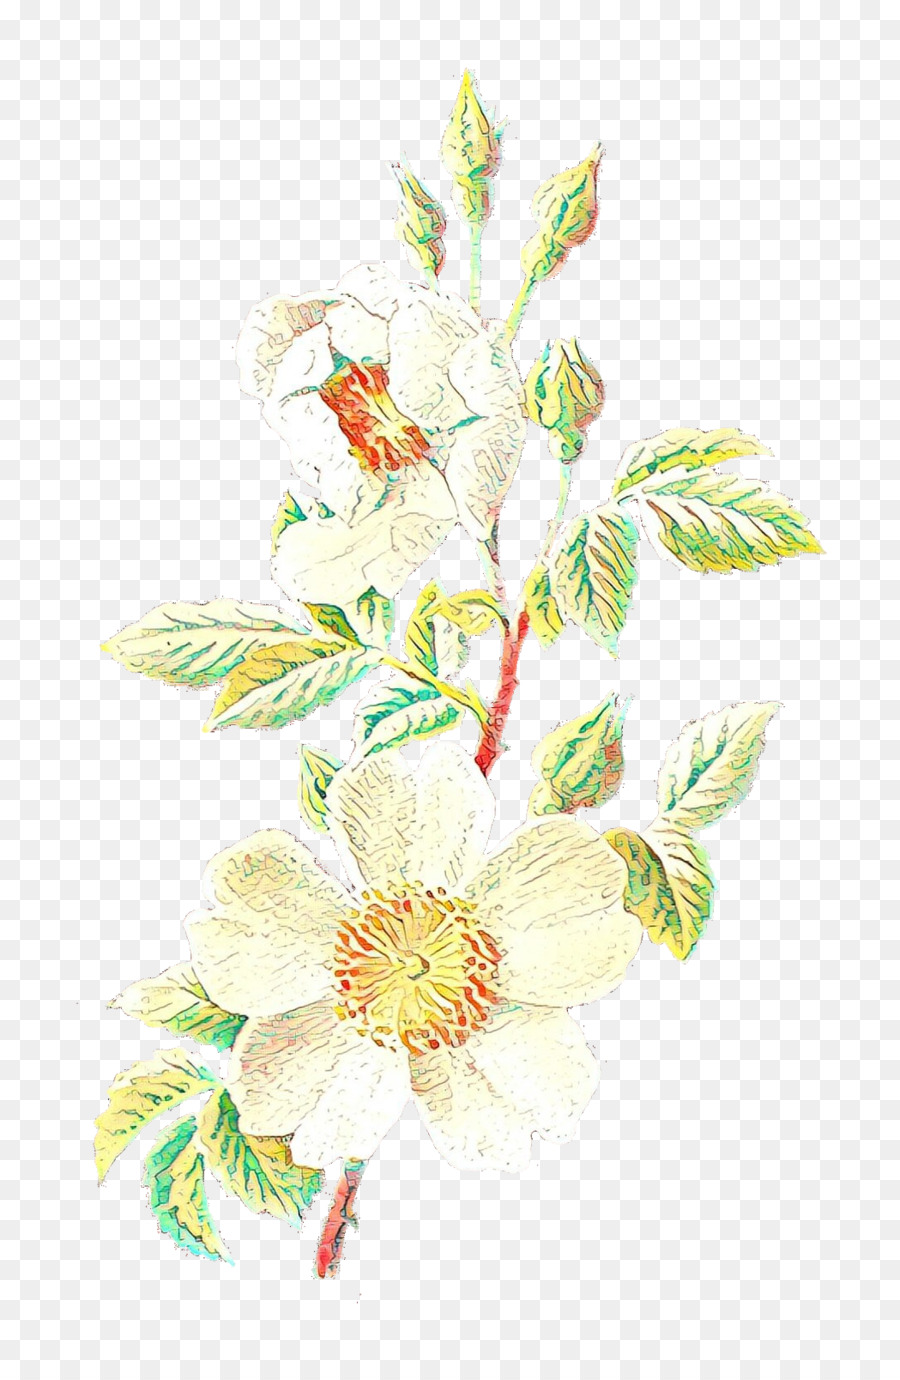 Floral design Illustration Flower Work of art -  png download - 1049*1600 - Free Transparent Floral Design png Download.